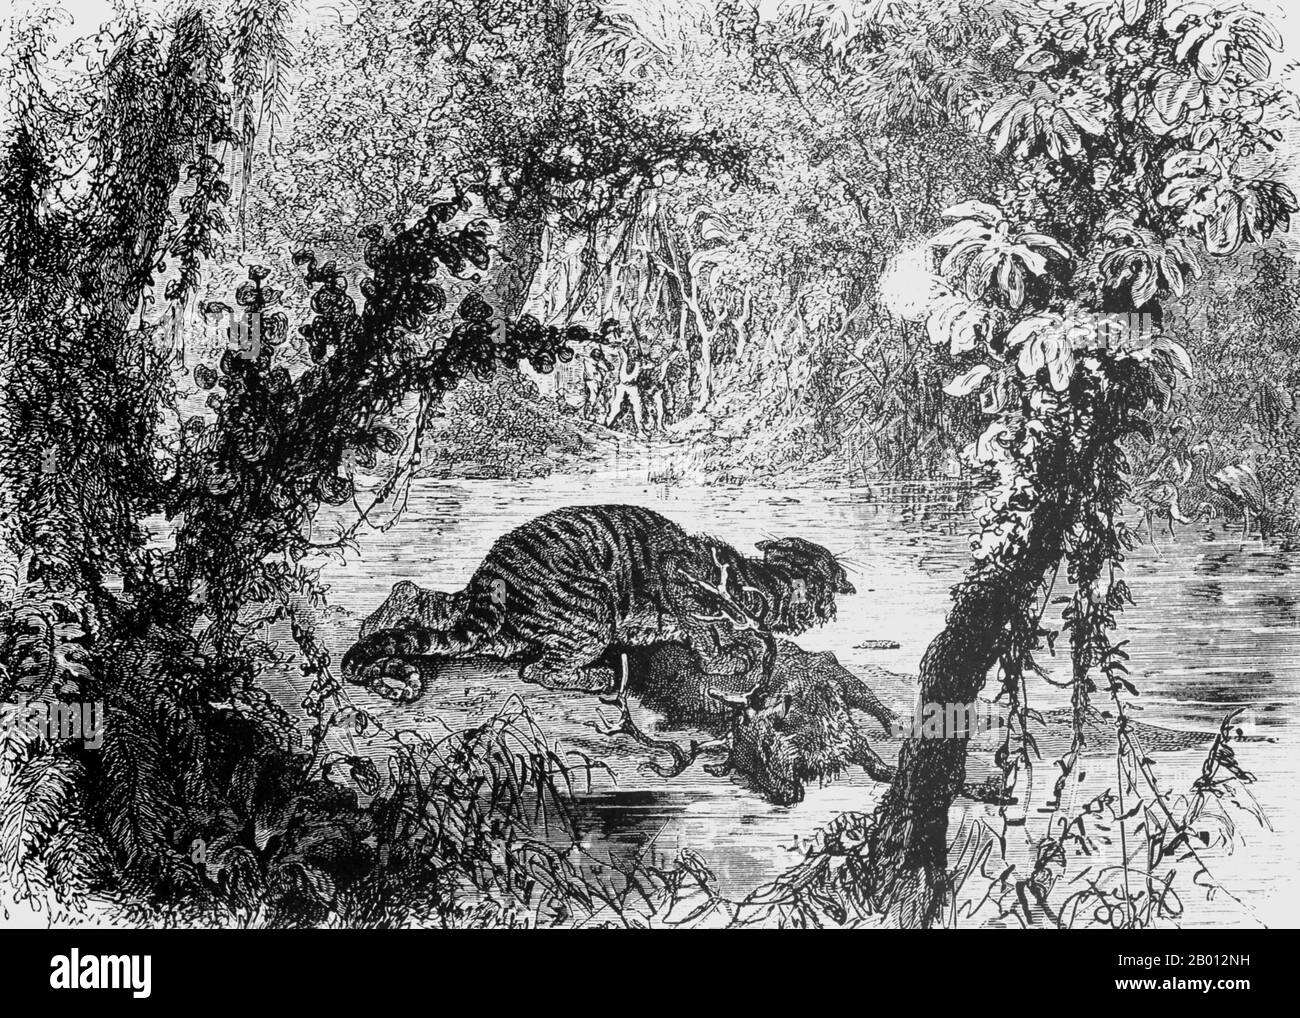 Kambodscha: Eine Skizze eines Hirsches, der von einem Tiger im Dschungel nördlich von Siem Reap getötet wurde. Illustration von Alphonse-Marie-Adolphe de Neuville (1836-1885), 1867. Diese Zeichnung von A. de Neuville basiert auf einem Original von Louis Delaporte, das während des zweijährigen Vorhabens der französischen Mekong Exploration Commission (1866-68) in den Dschungel von Indochina skizziert wurde. Der Hirsch wurde vor ihren Augen vom Tiger getötet. Die französischen Kolonialisten schossen ein paar Schüsse ab und trieben das Tier weg, schnitten dann die Hinterhand des Hirsches ab und trugen es nach Siem Reap, wo das Fleisch gesalzen wurde. Stockfoto